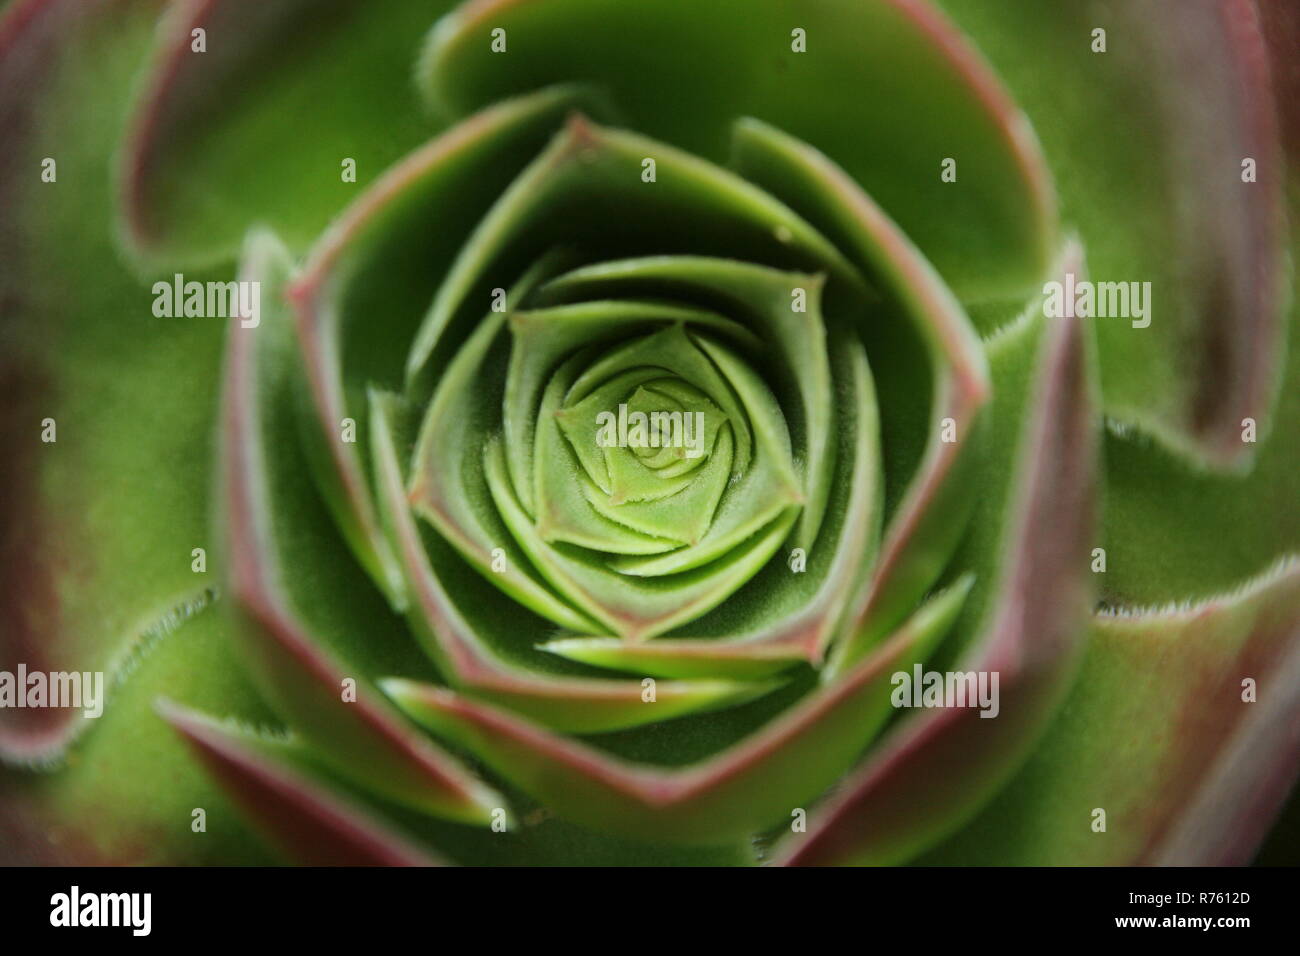 Aeonium arboreum rosette center close-up Stock Photo